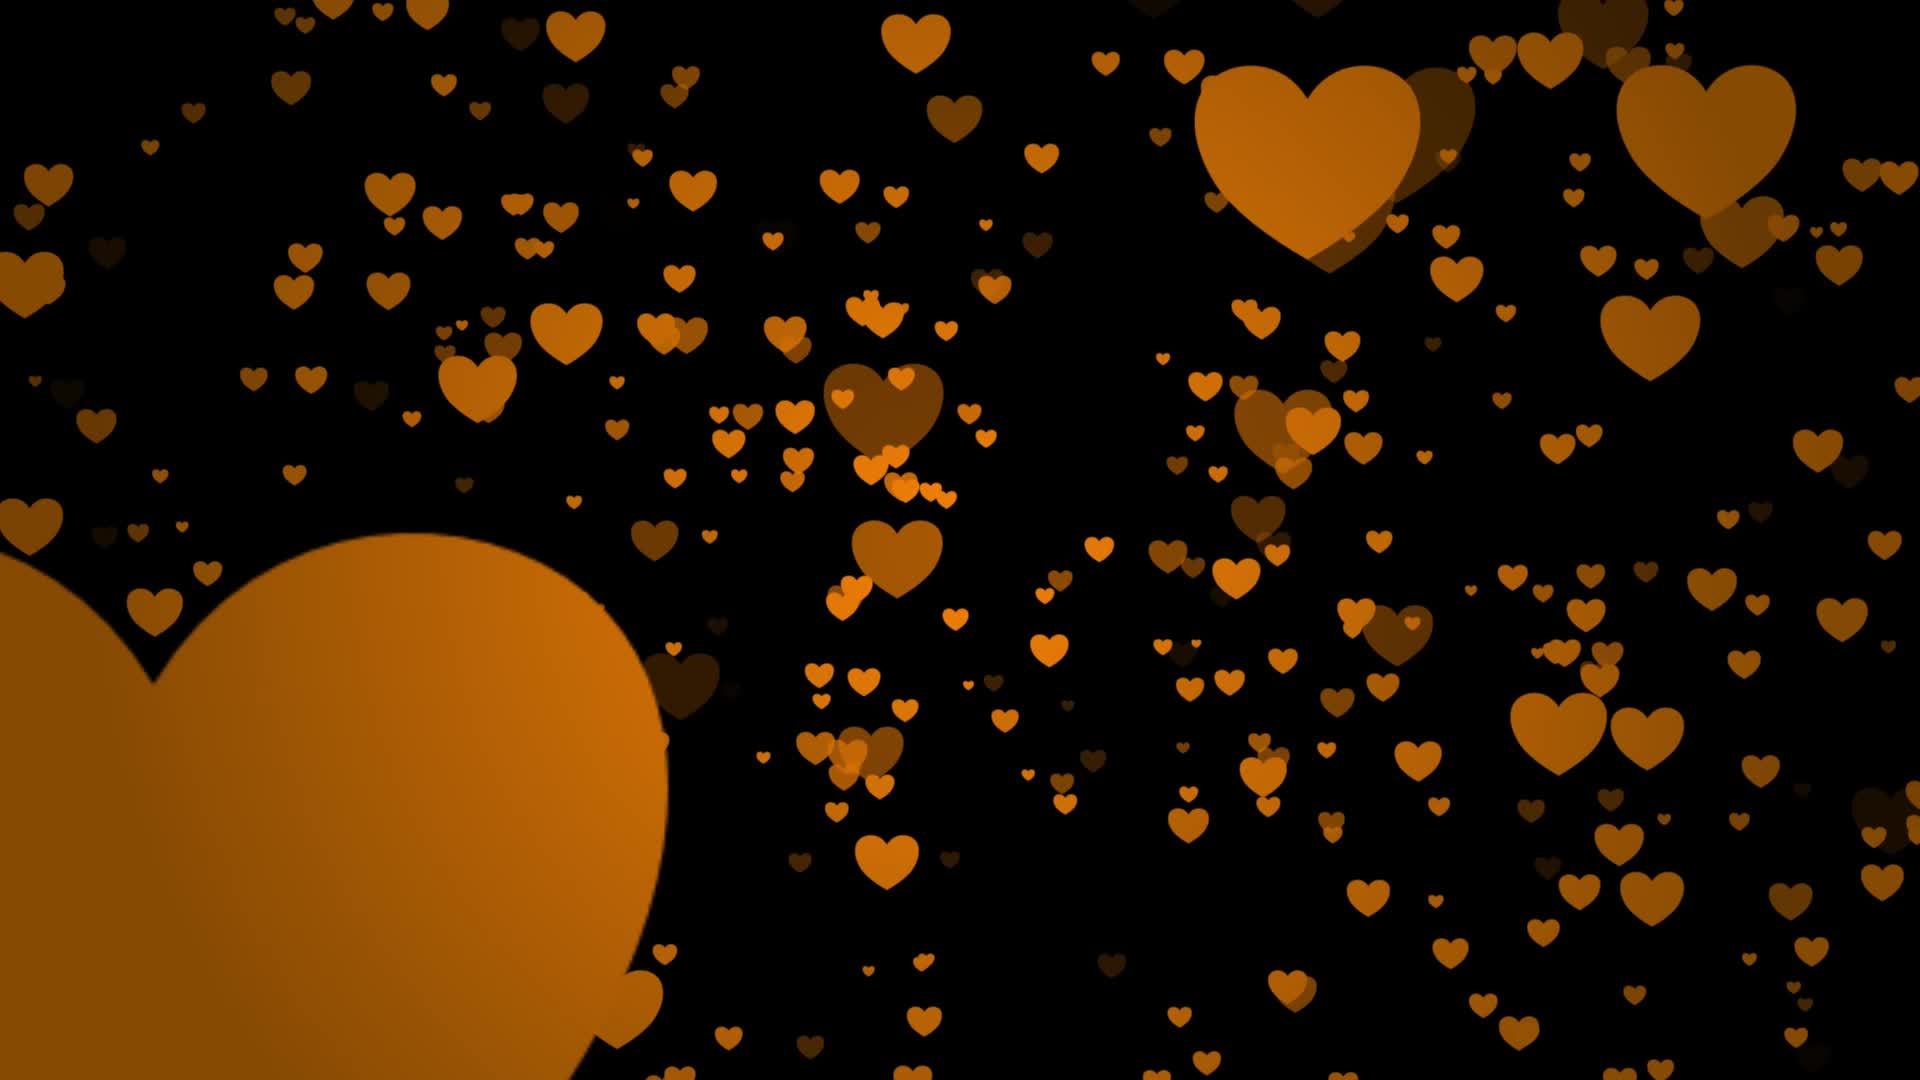 Hãy nhấn vào đây để xem hình nền hoạt hình tình yêu cam với hình trái tim. Dễ thương và ngọt ngào, nó sẽ làm bạn cảm thấy yêu đời hơn và đem lại cho bạn một trải nghiệm thật tuyệt vời.